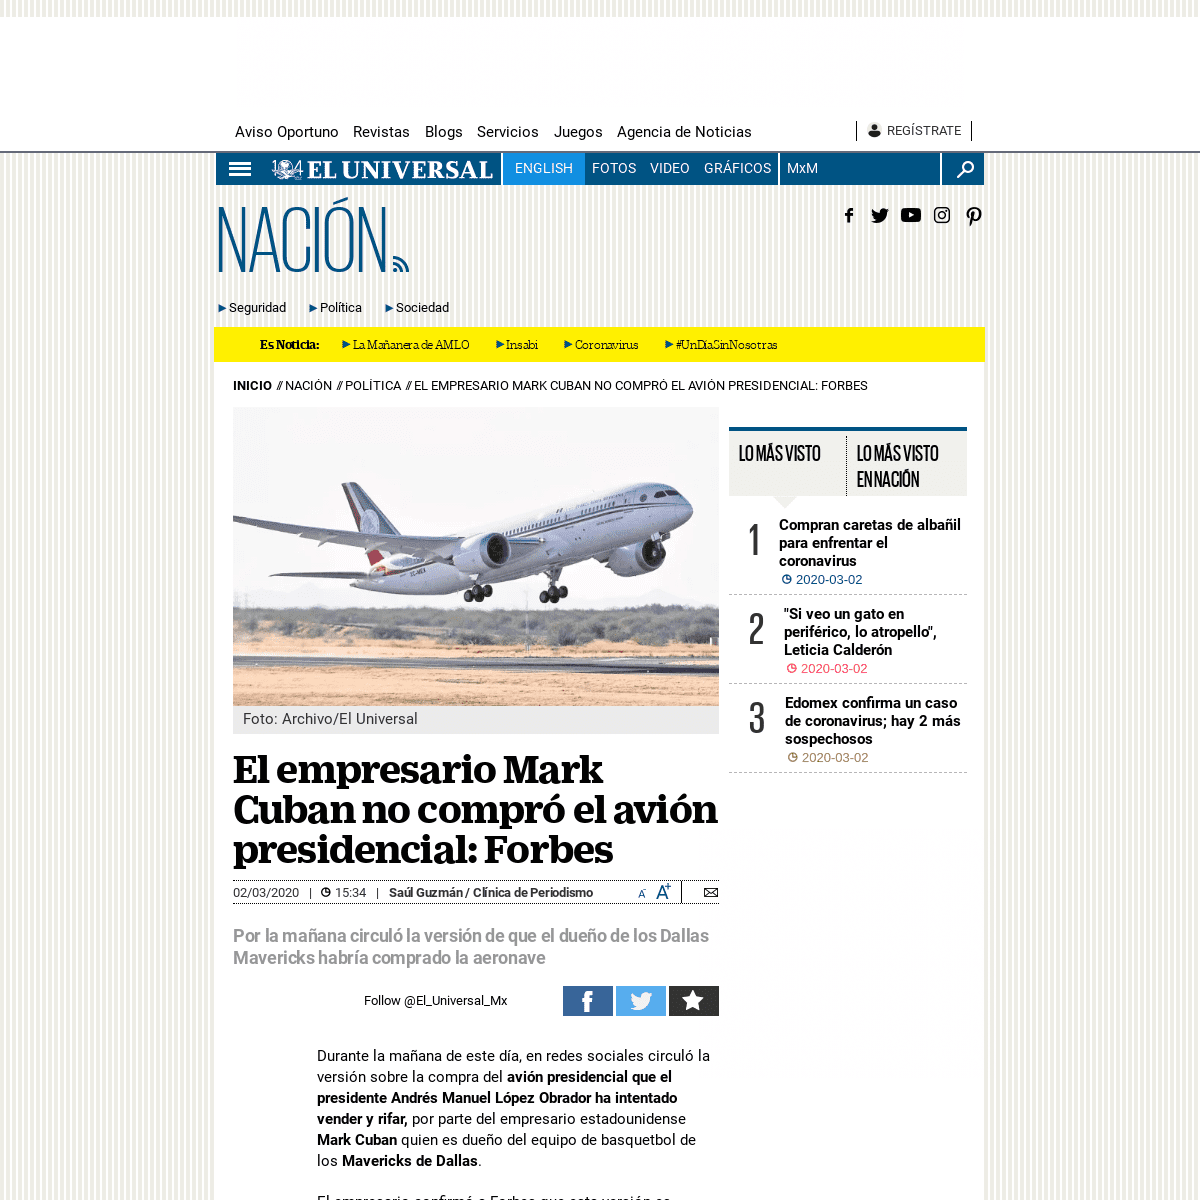 A complete backup of www.eluniversal.com.mx/nacion/politica/el-empresario-mark-cuban-no-compro-el-avion-presidencial-forbes